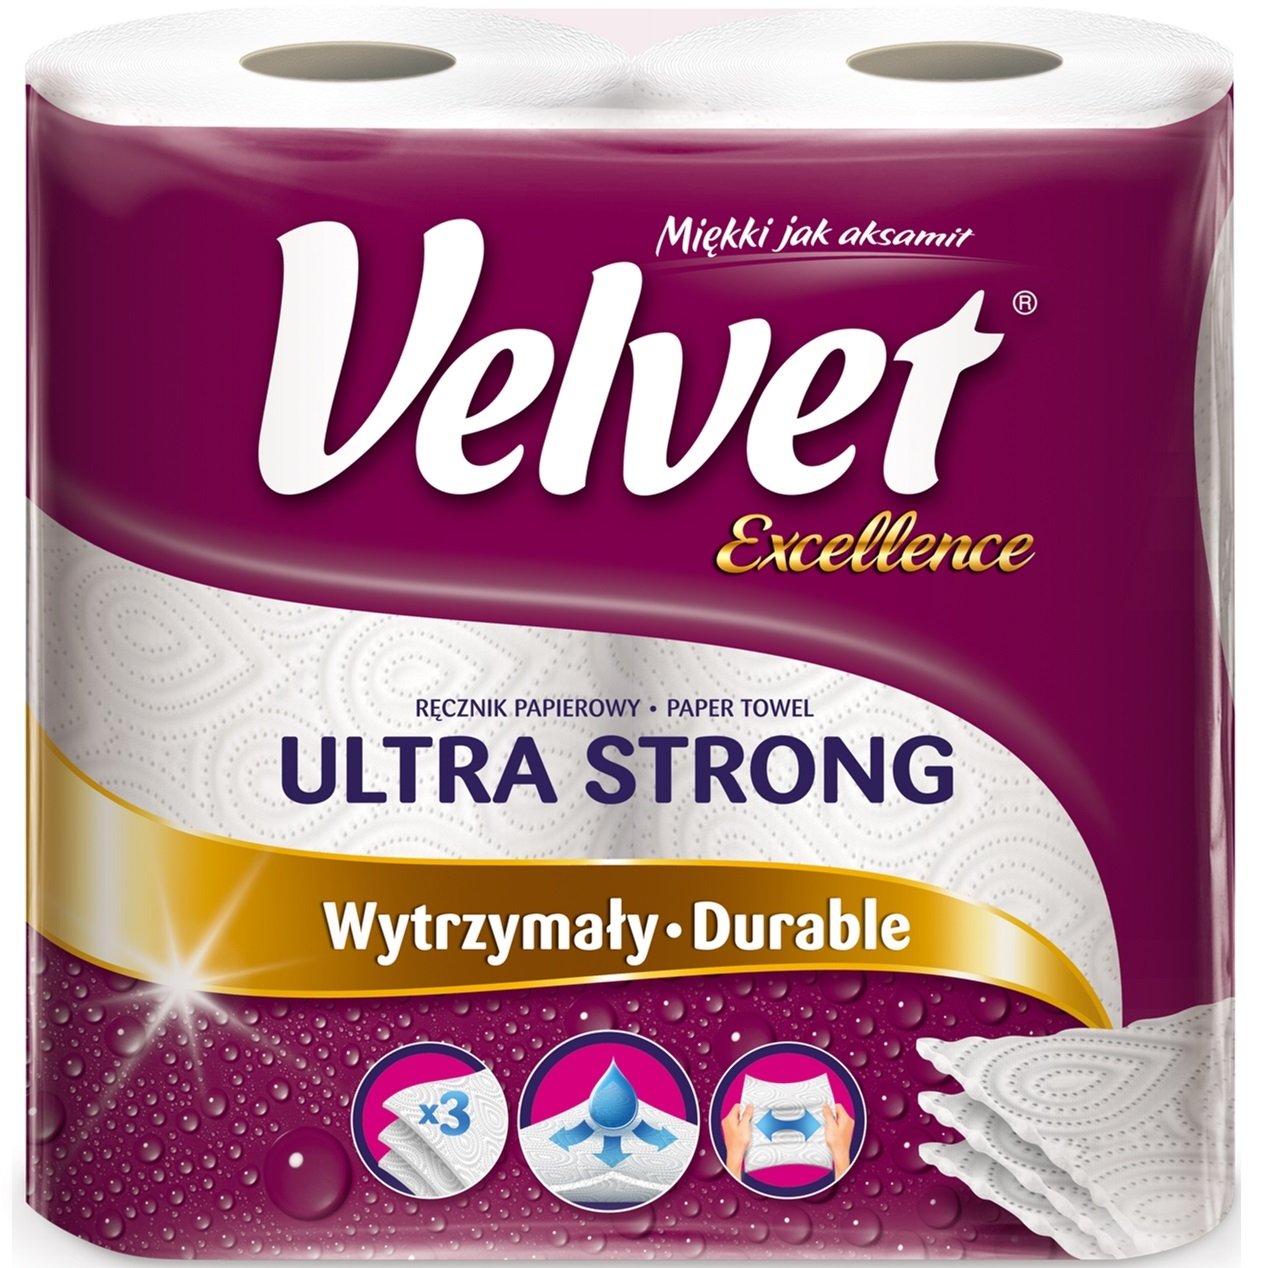 Бумажные полотенца Velvet Excellence, трехслойные, 2 рулона - фото 1